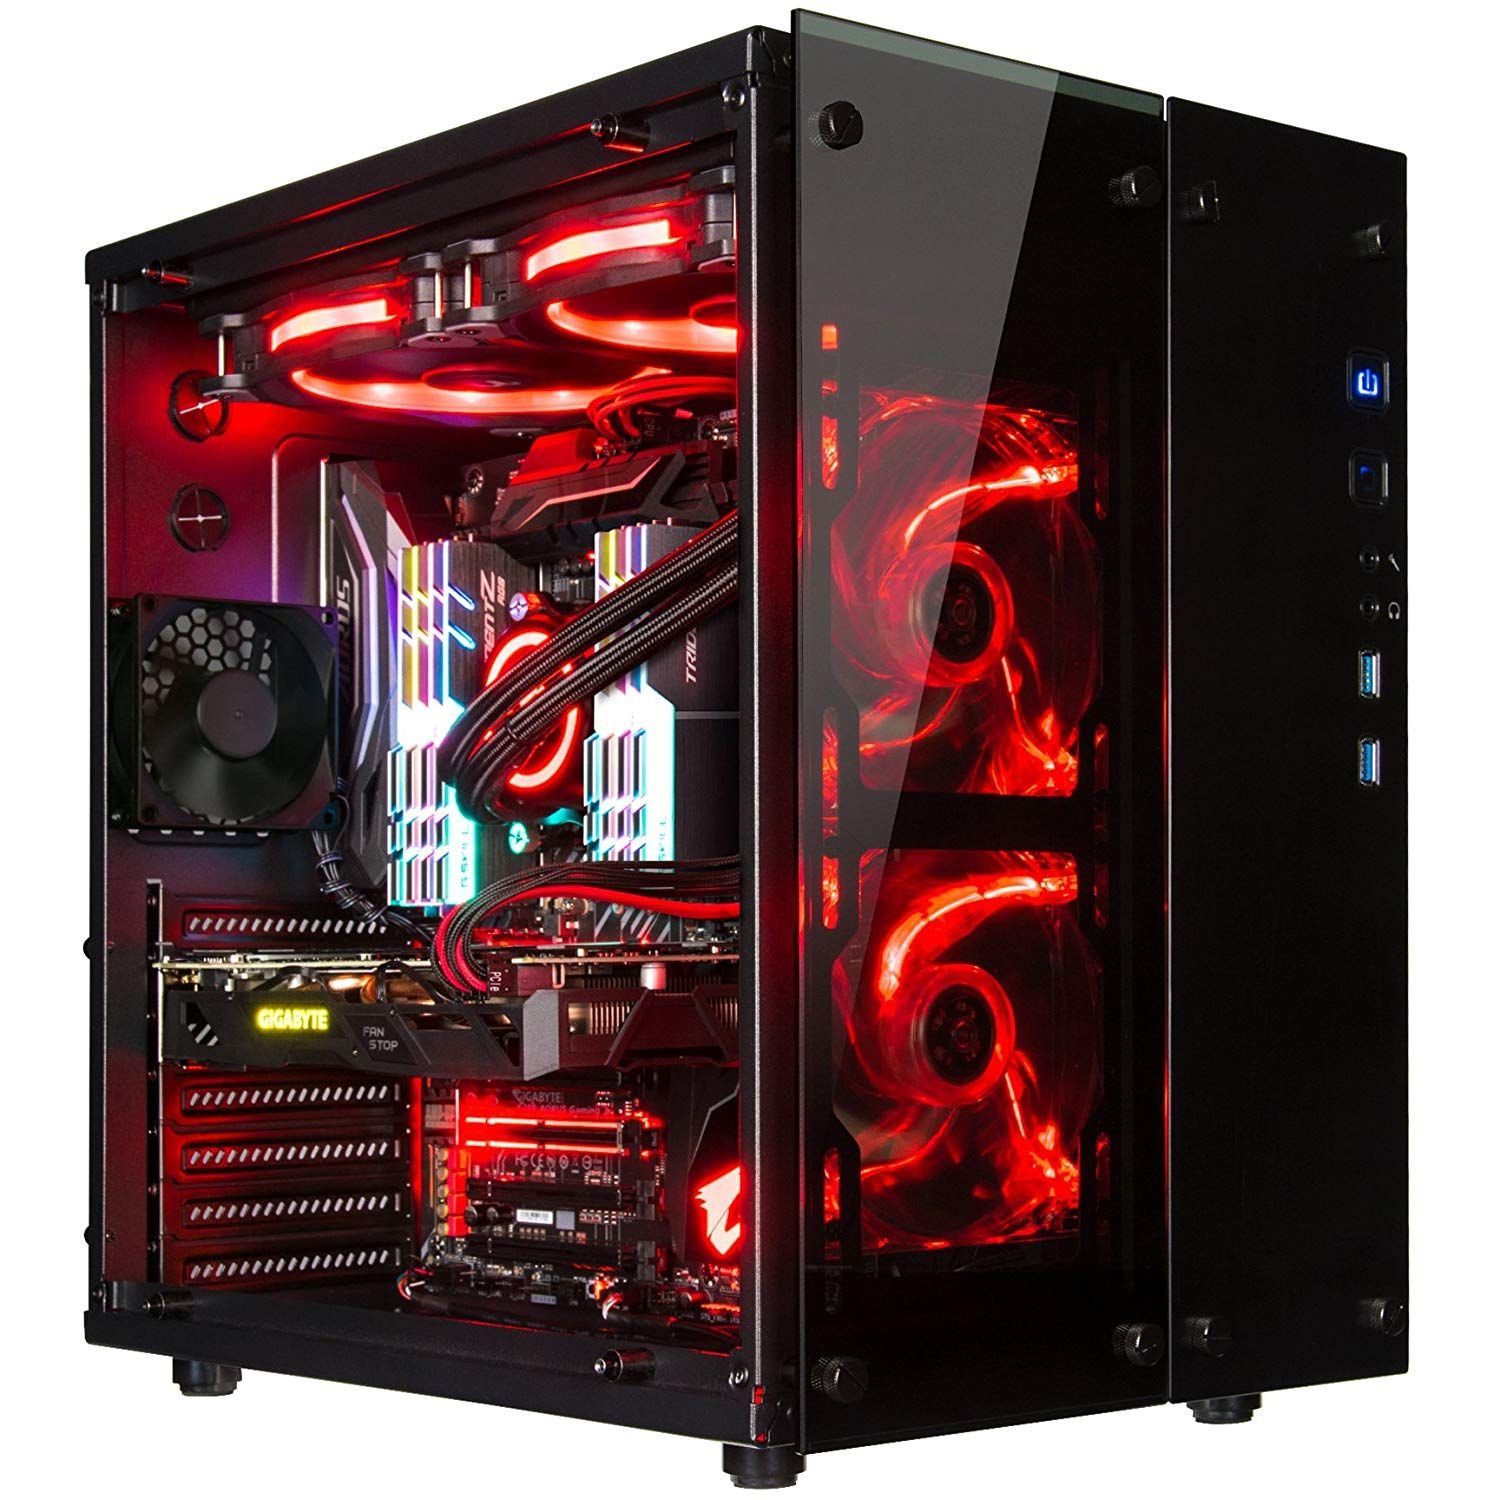 Ardor gaming x17. Компьютер (игровой системный блок) qx200 (i3). Компьютерный корпус Computer Case c806. Компьютерный корпус Chenbro pc61165 Black/Red. Rosewill Spectra d100.